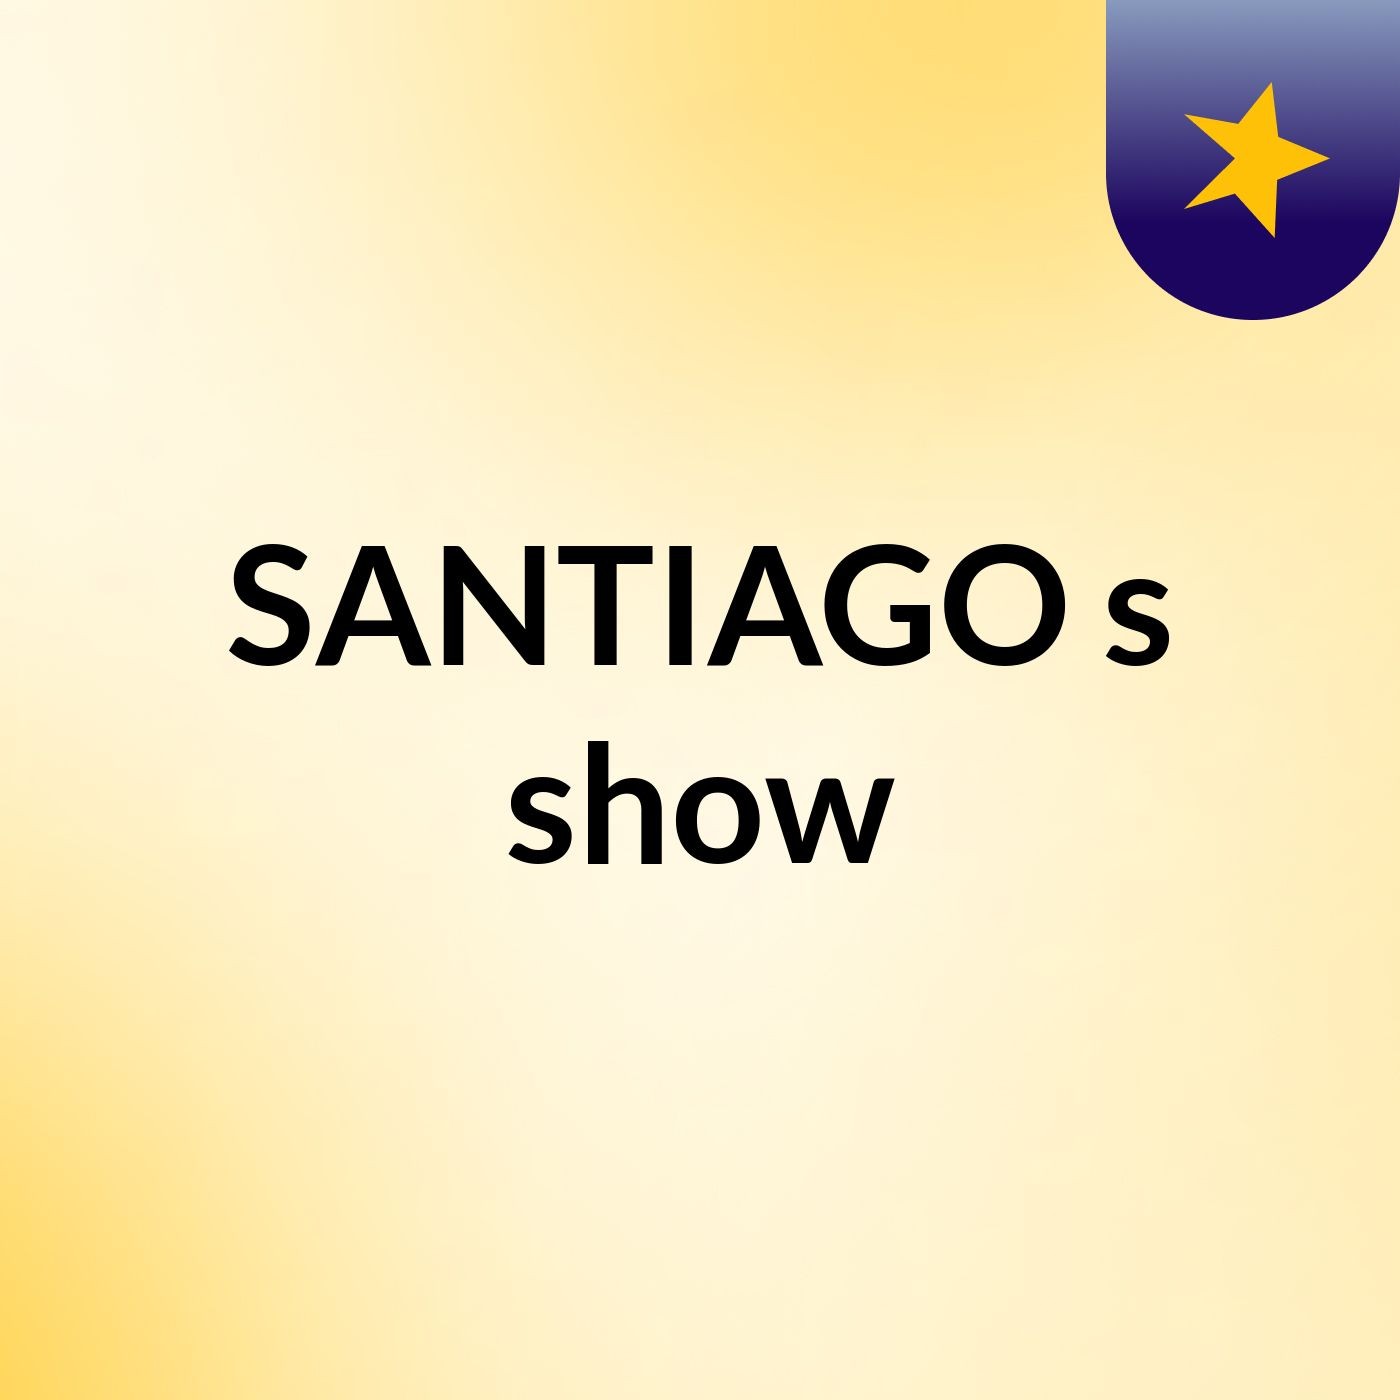 SANTIAGO's show